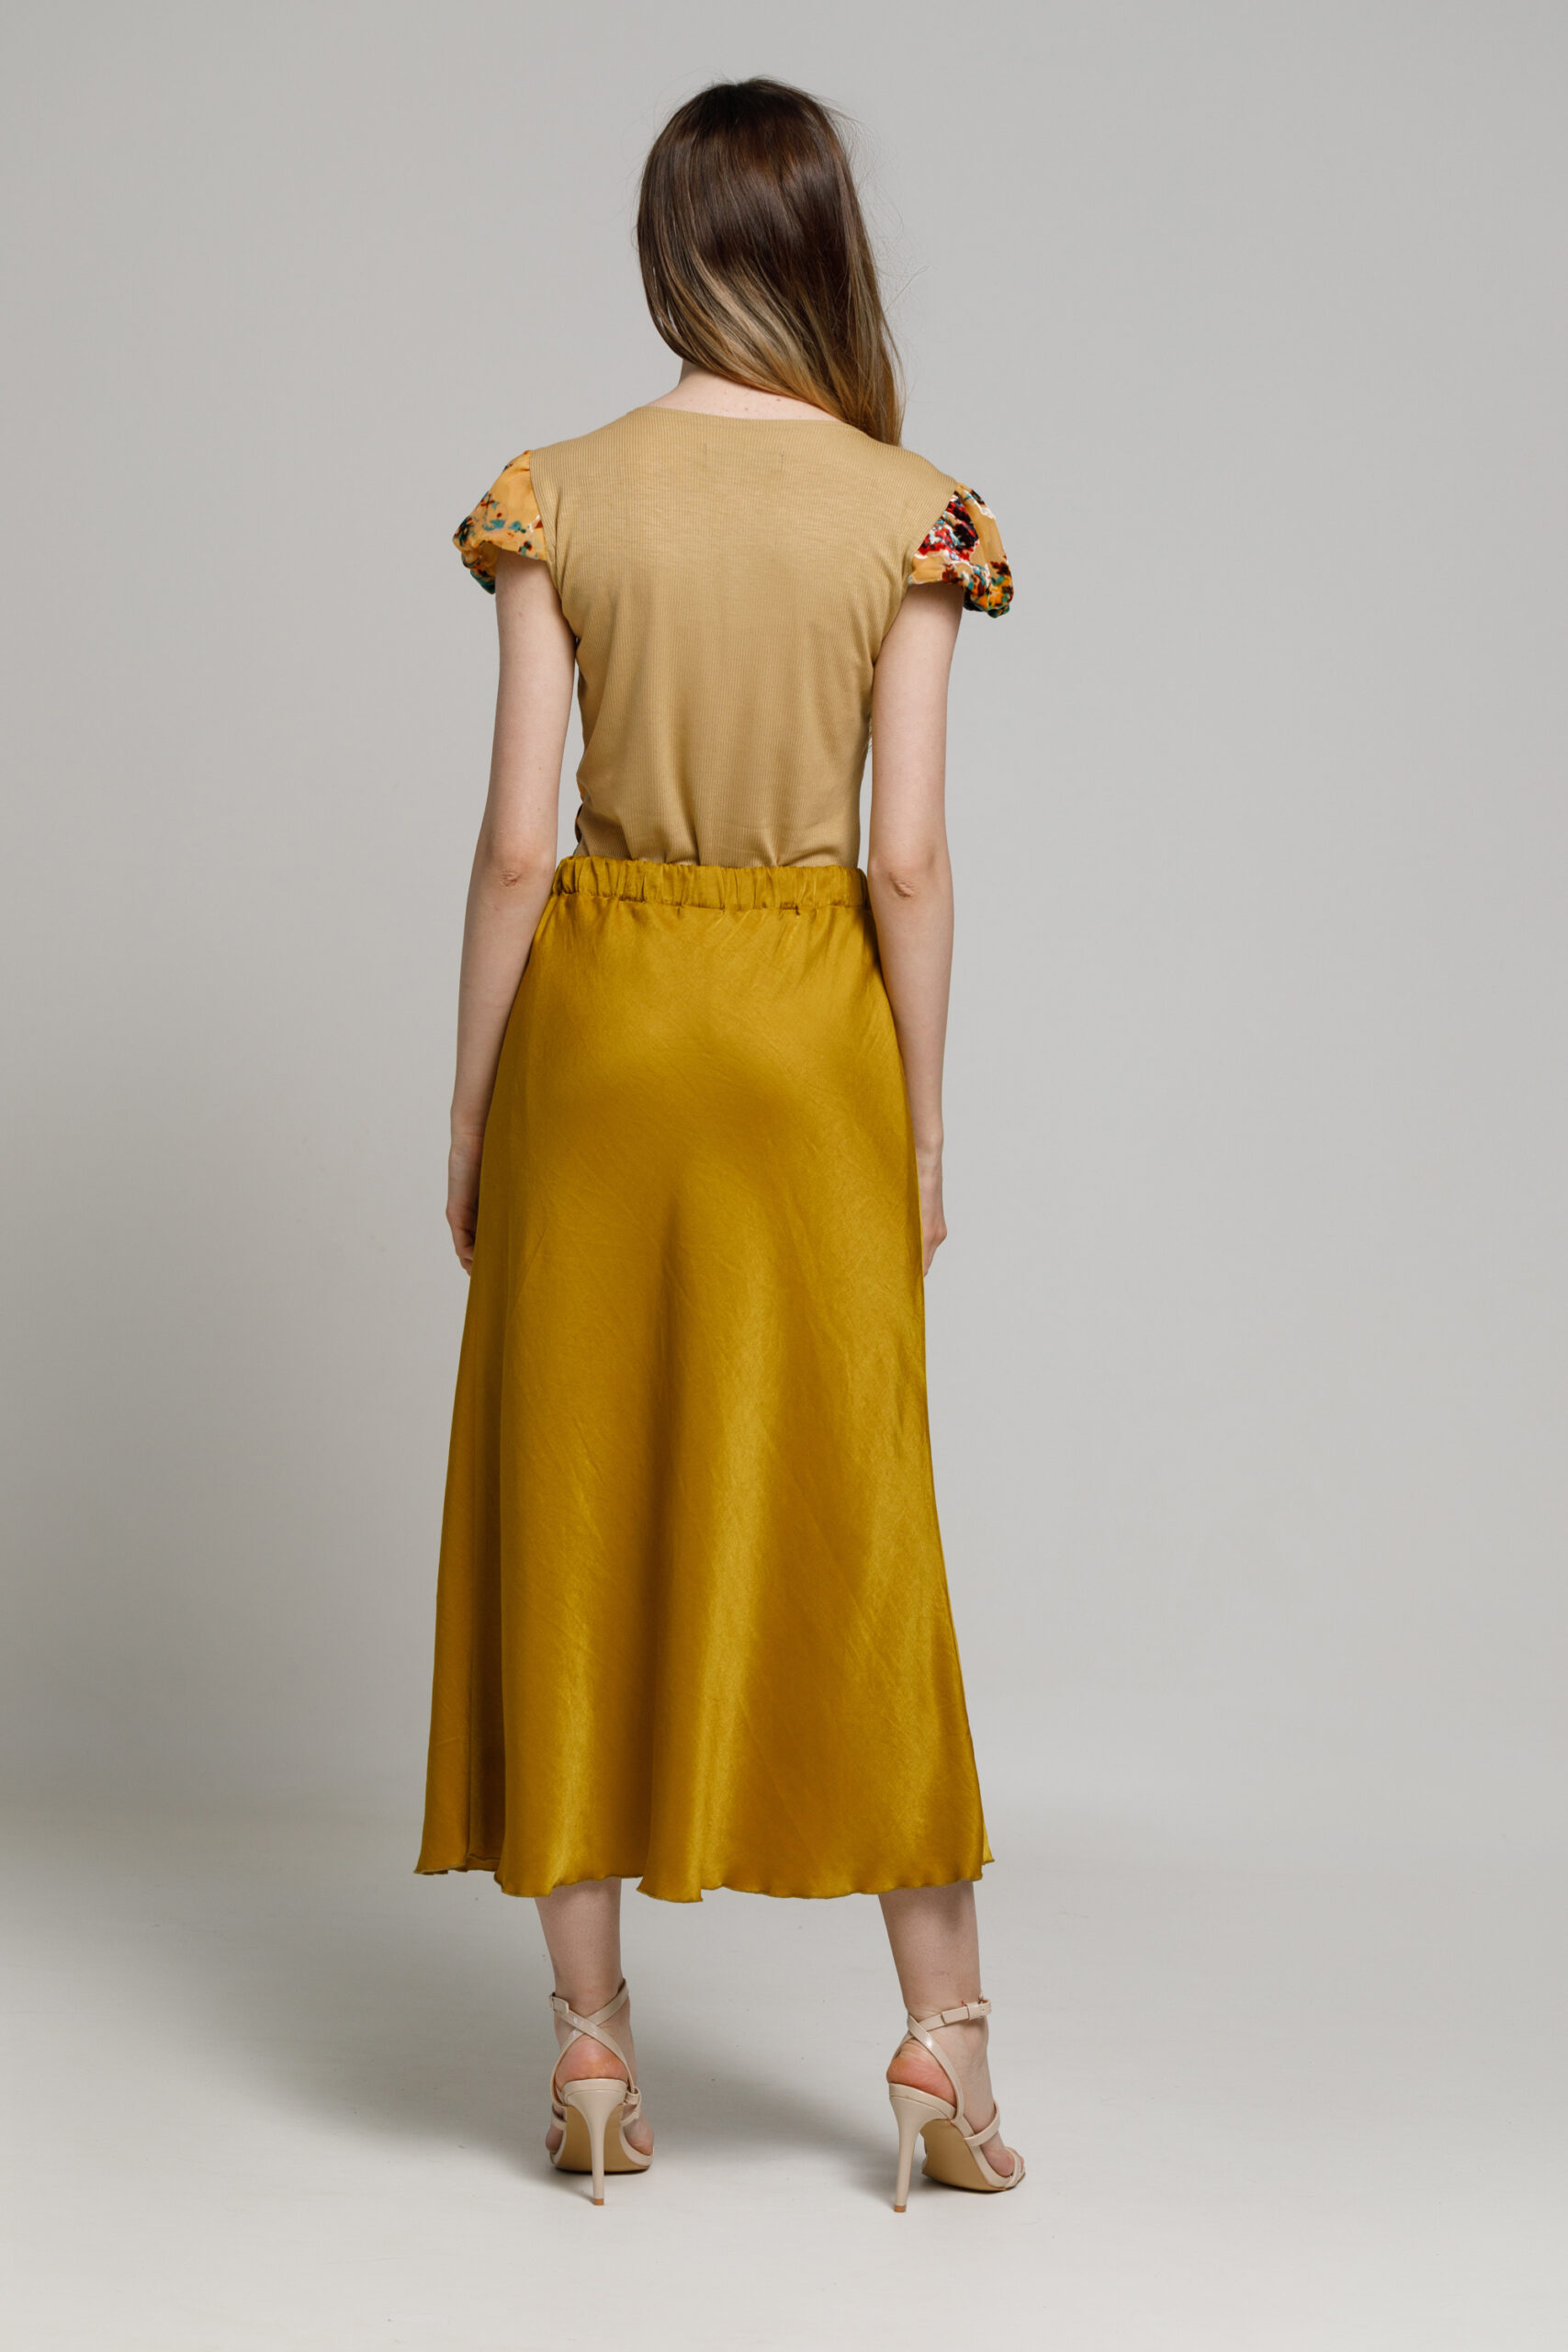 DORIA bronze-gold viscose skirt. Natural fabrics, original design, handmade embroidery